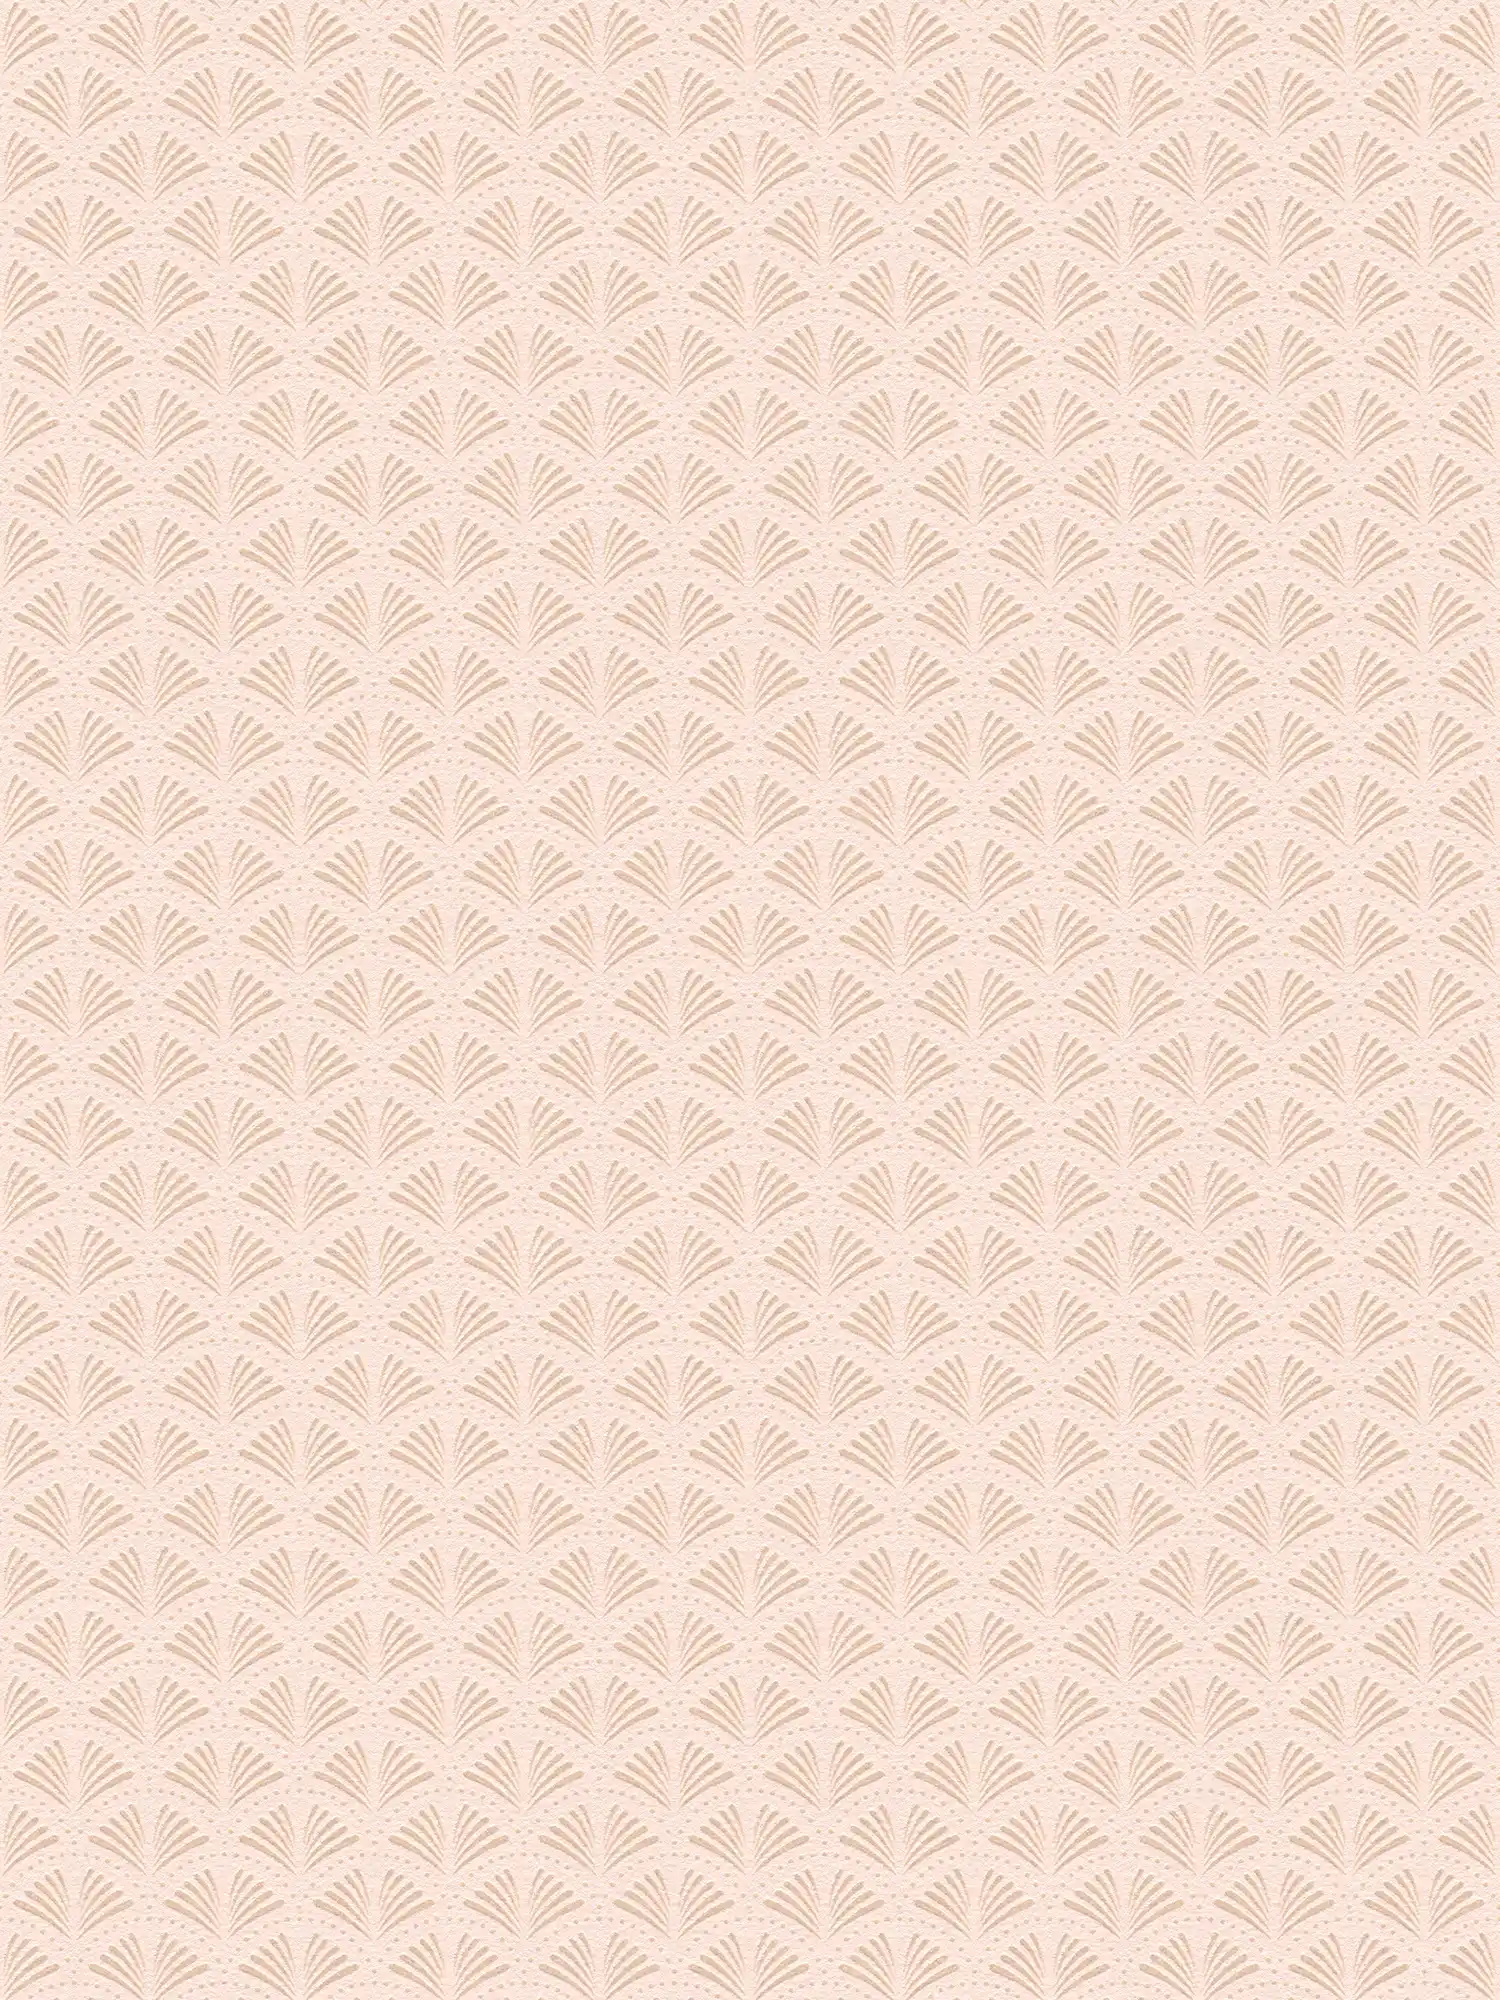 Carta da parati in tessuto non tessuto rosa con struttura e motivo metallico - crema, metallico, rosa
